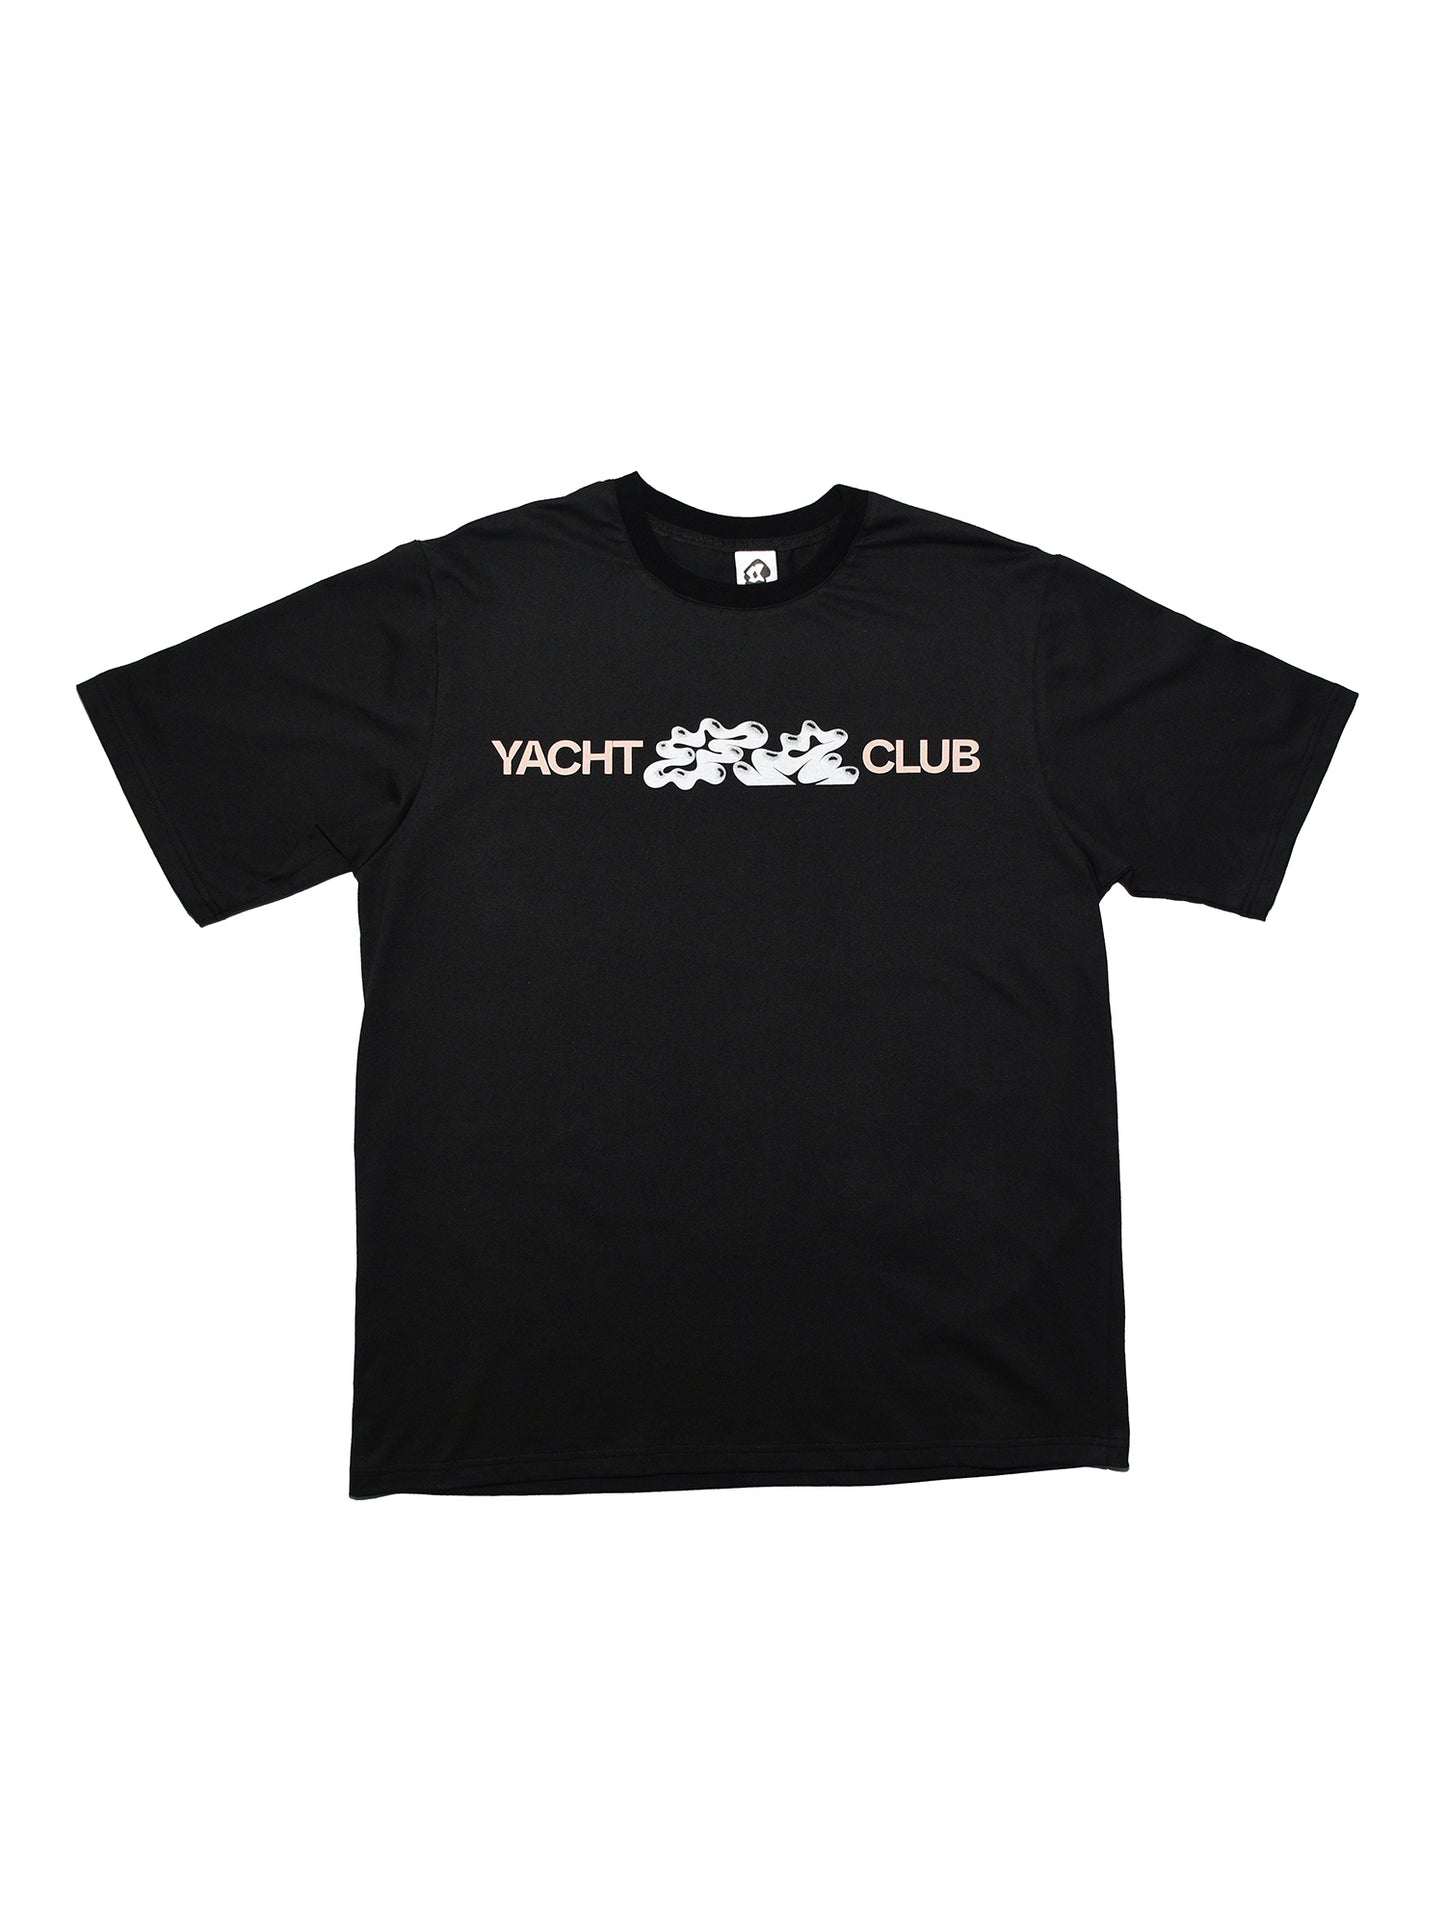 YACHT CLUB T-SHIRT